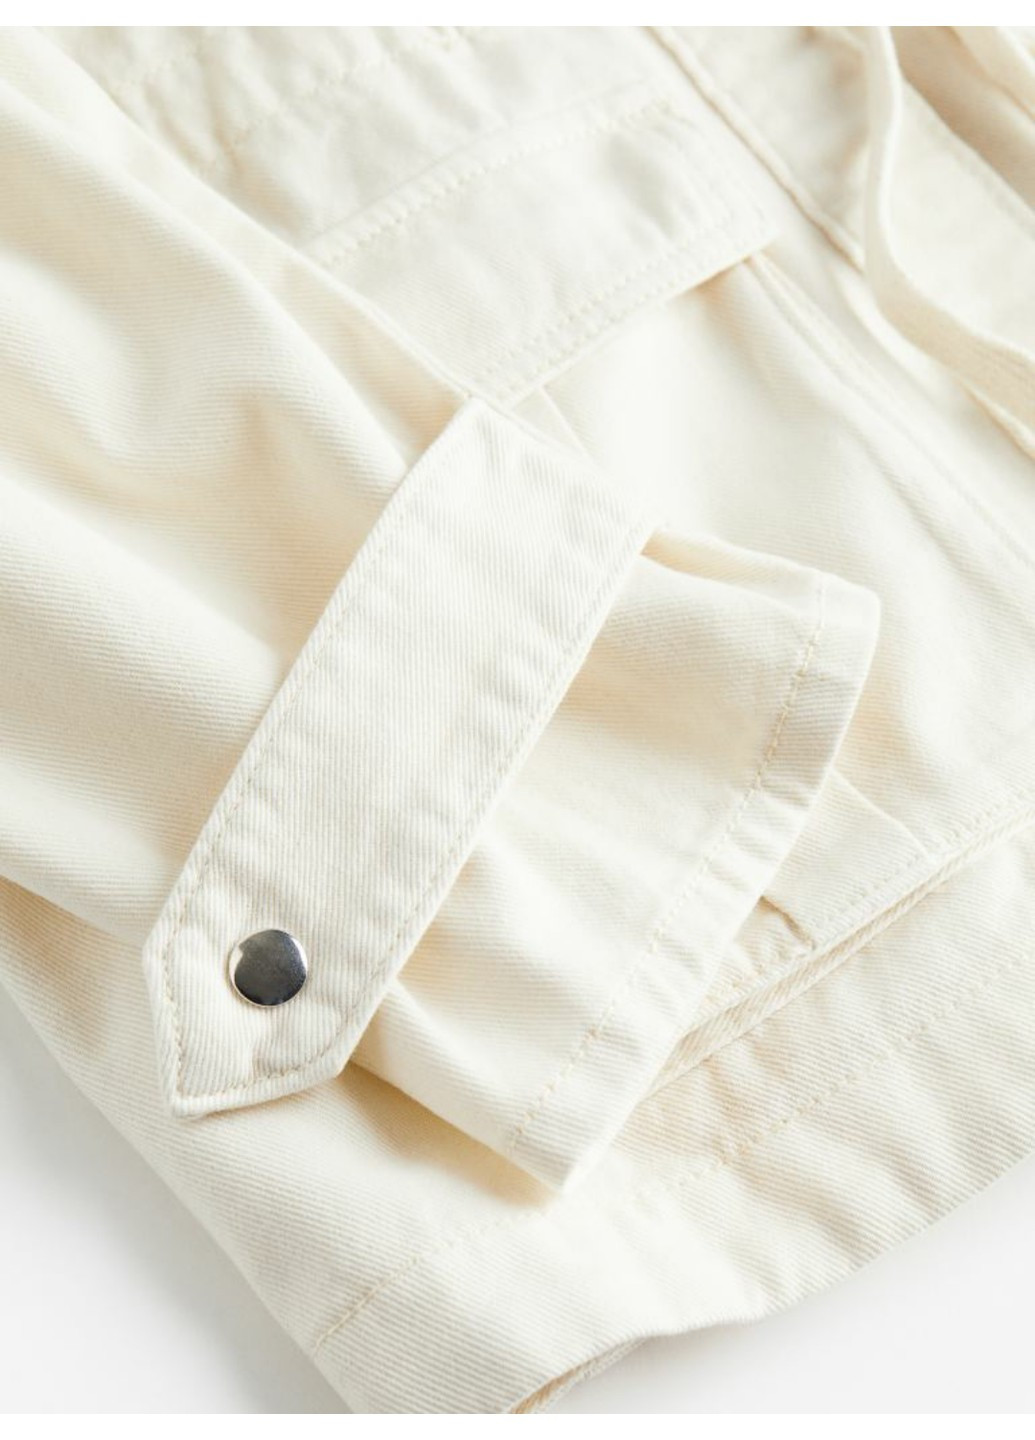 Біла демісезонна жіноча куртка джинсова з поясом (55622) 34 біла H&M